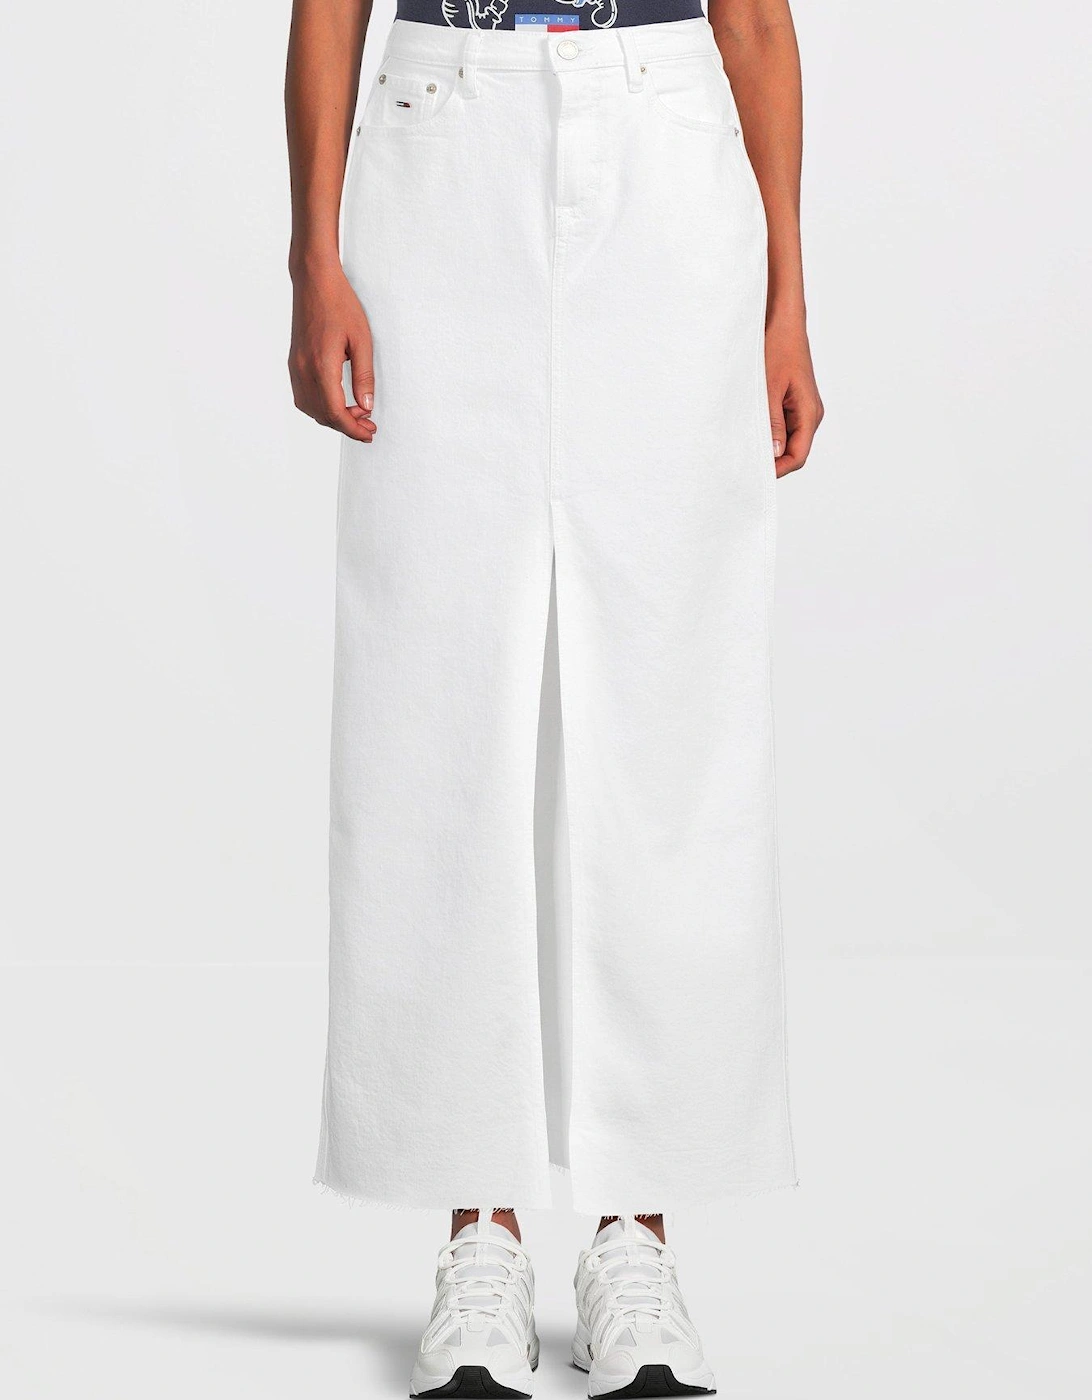 Denim Maxi Skirt - White, 6 of 5